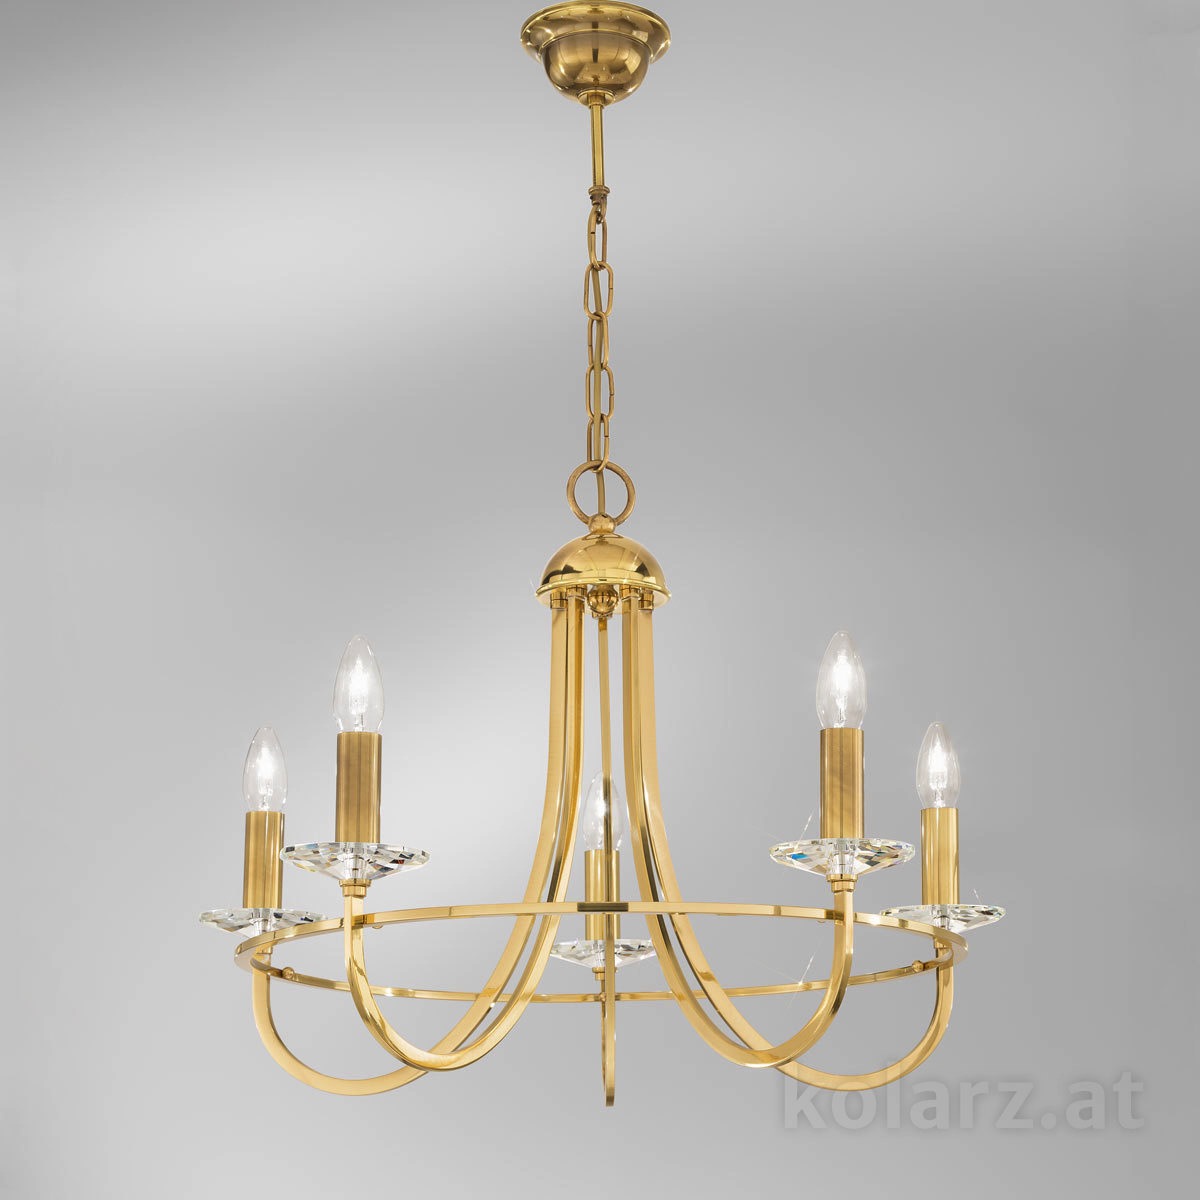 KOLARZ Leuchten Artikel fürs Wohnzimmer von KOLARZ Leuchten Luster, chandelier - Imperial 330.85.8C